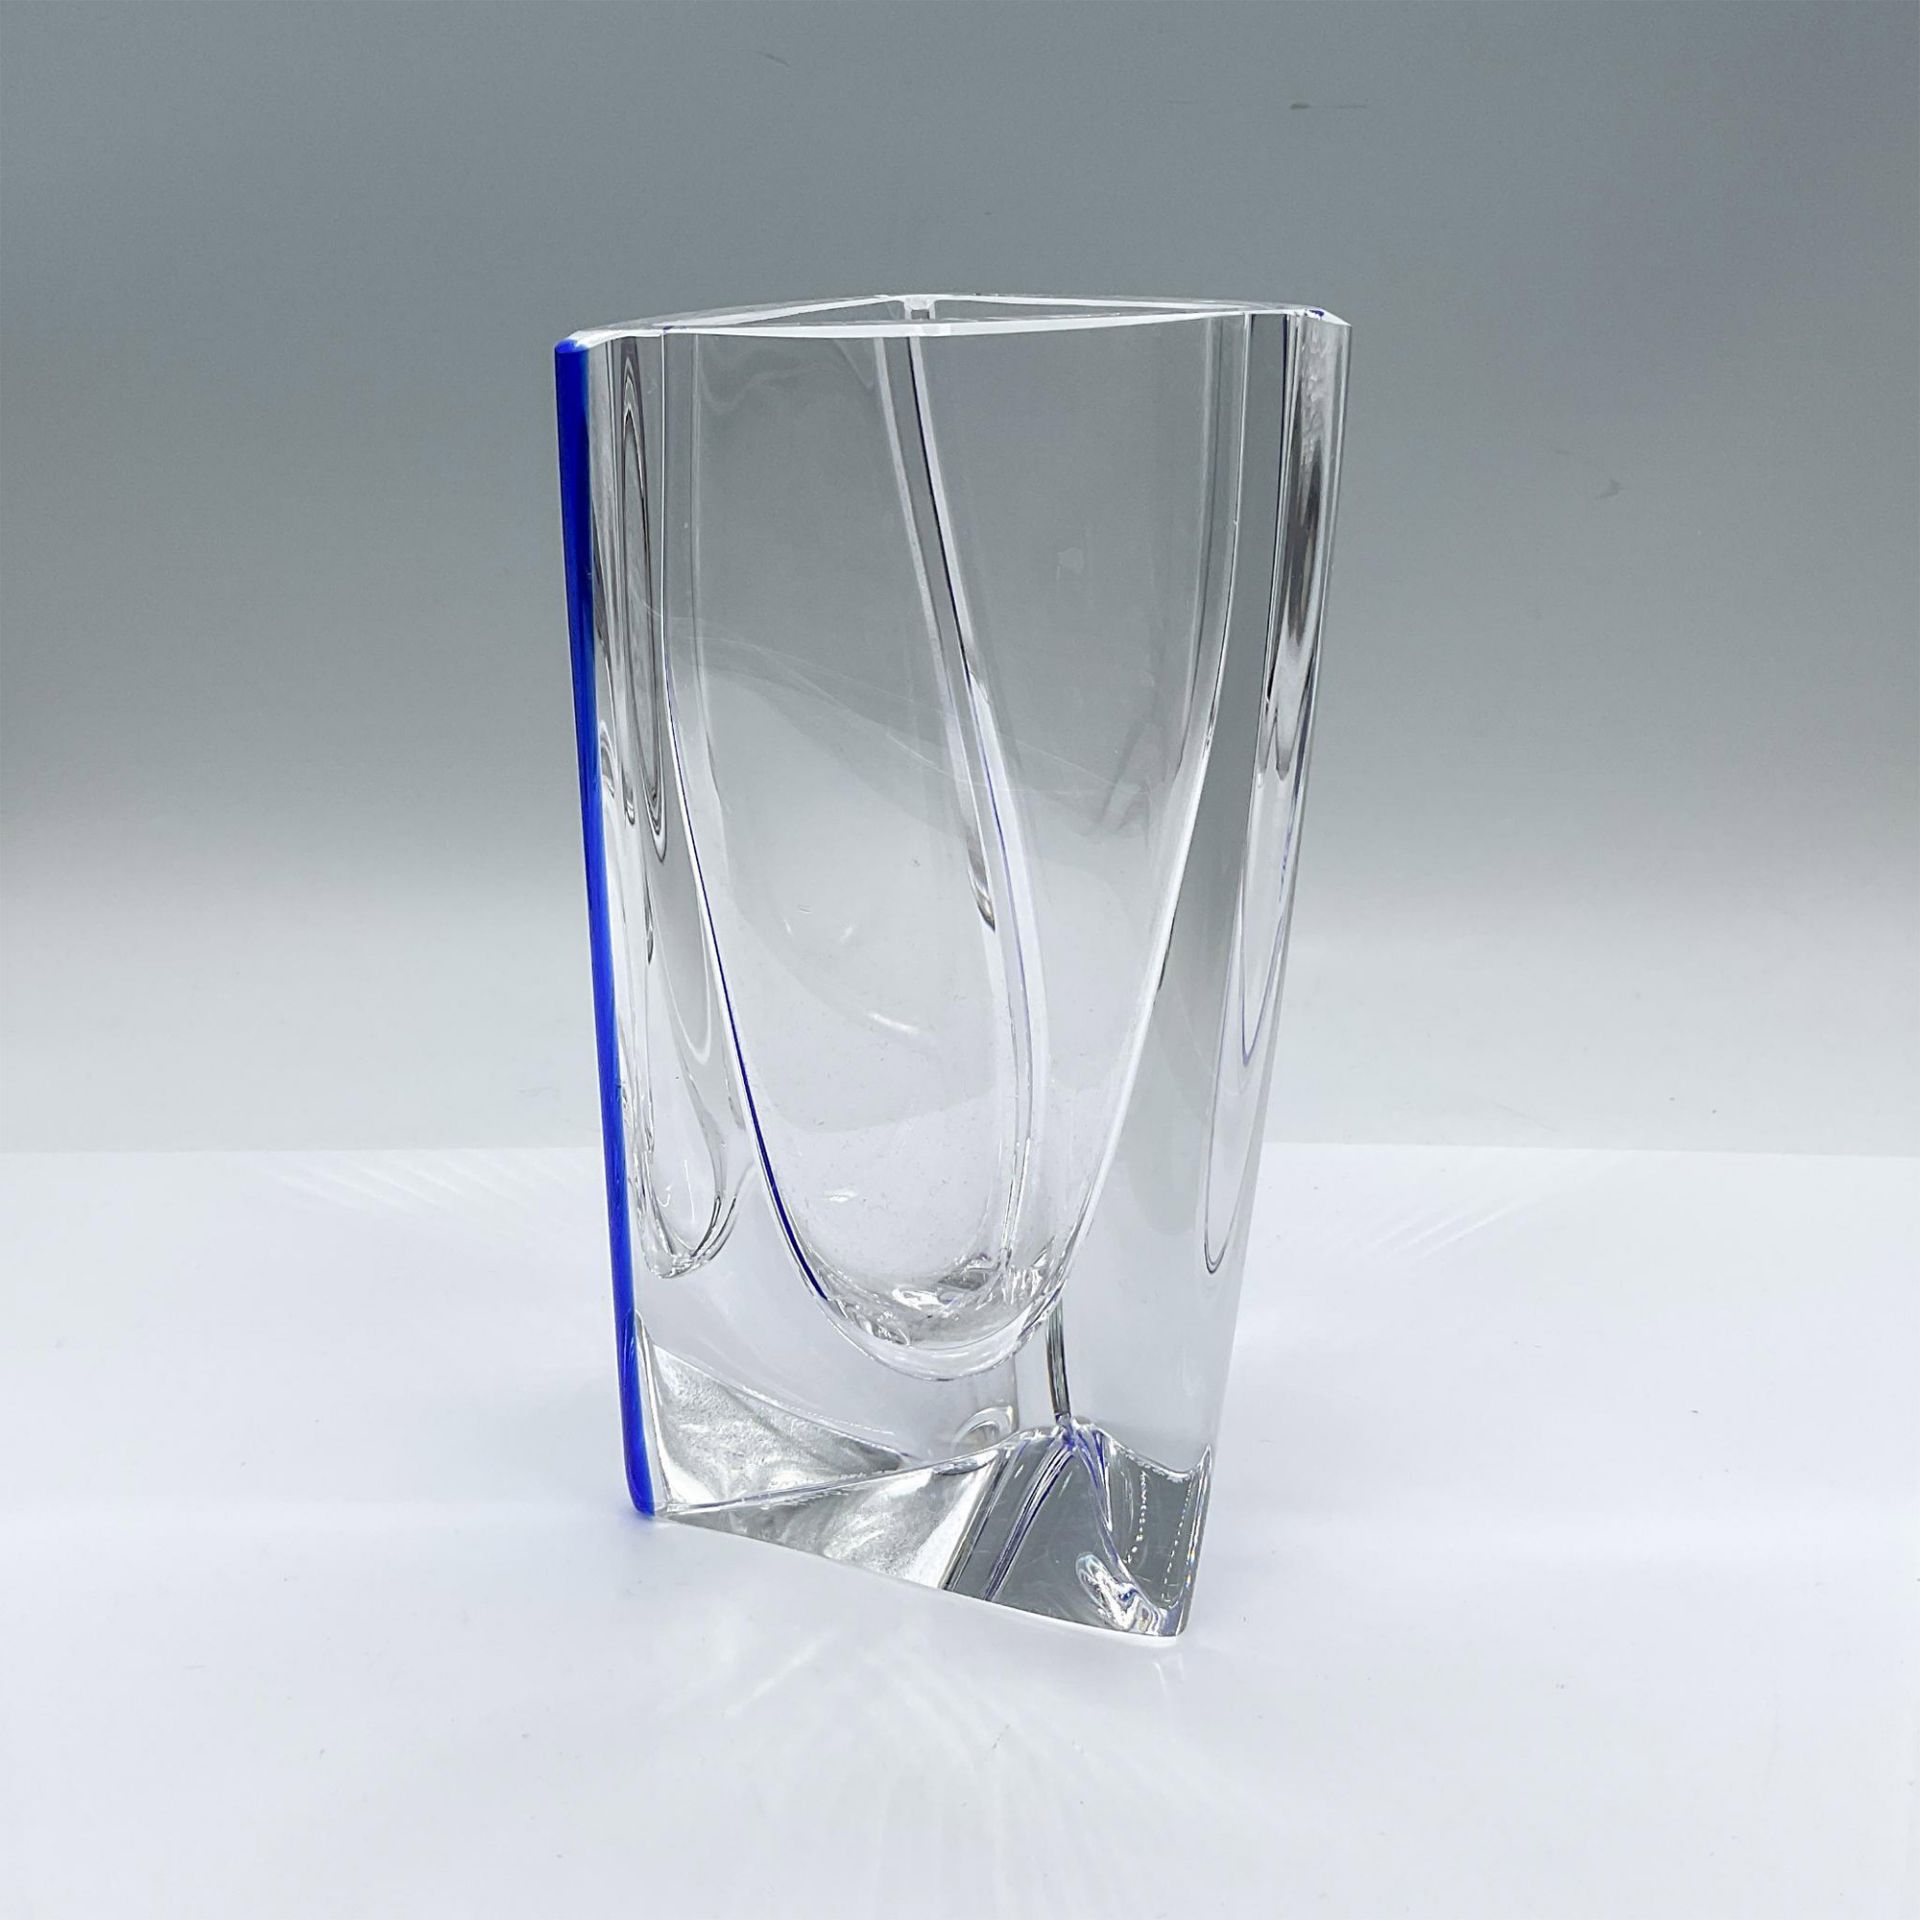 Kosta Boda by Goran Warff Glass Triangular Vase - Image 2 of 4